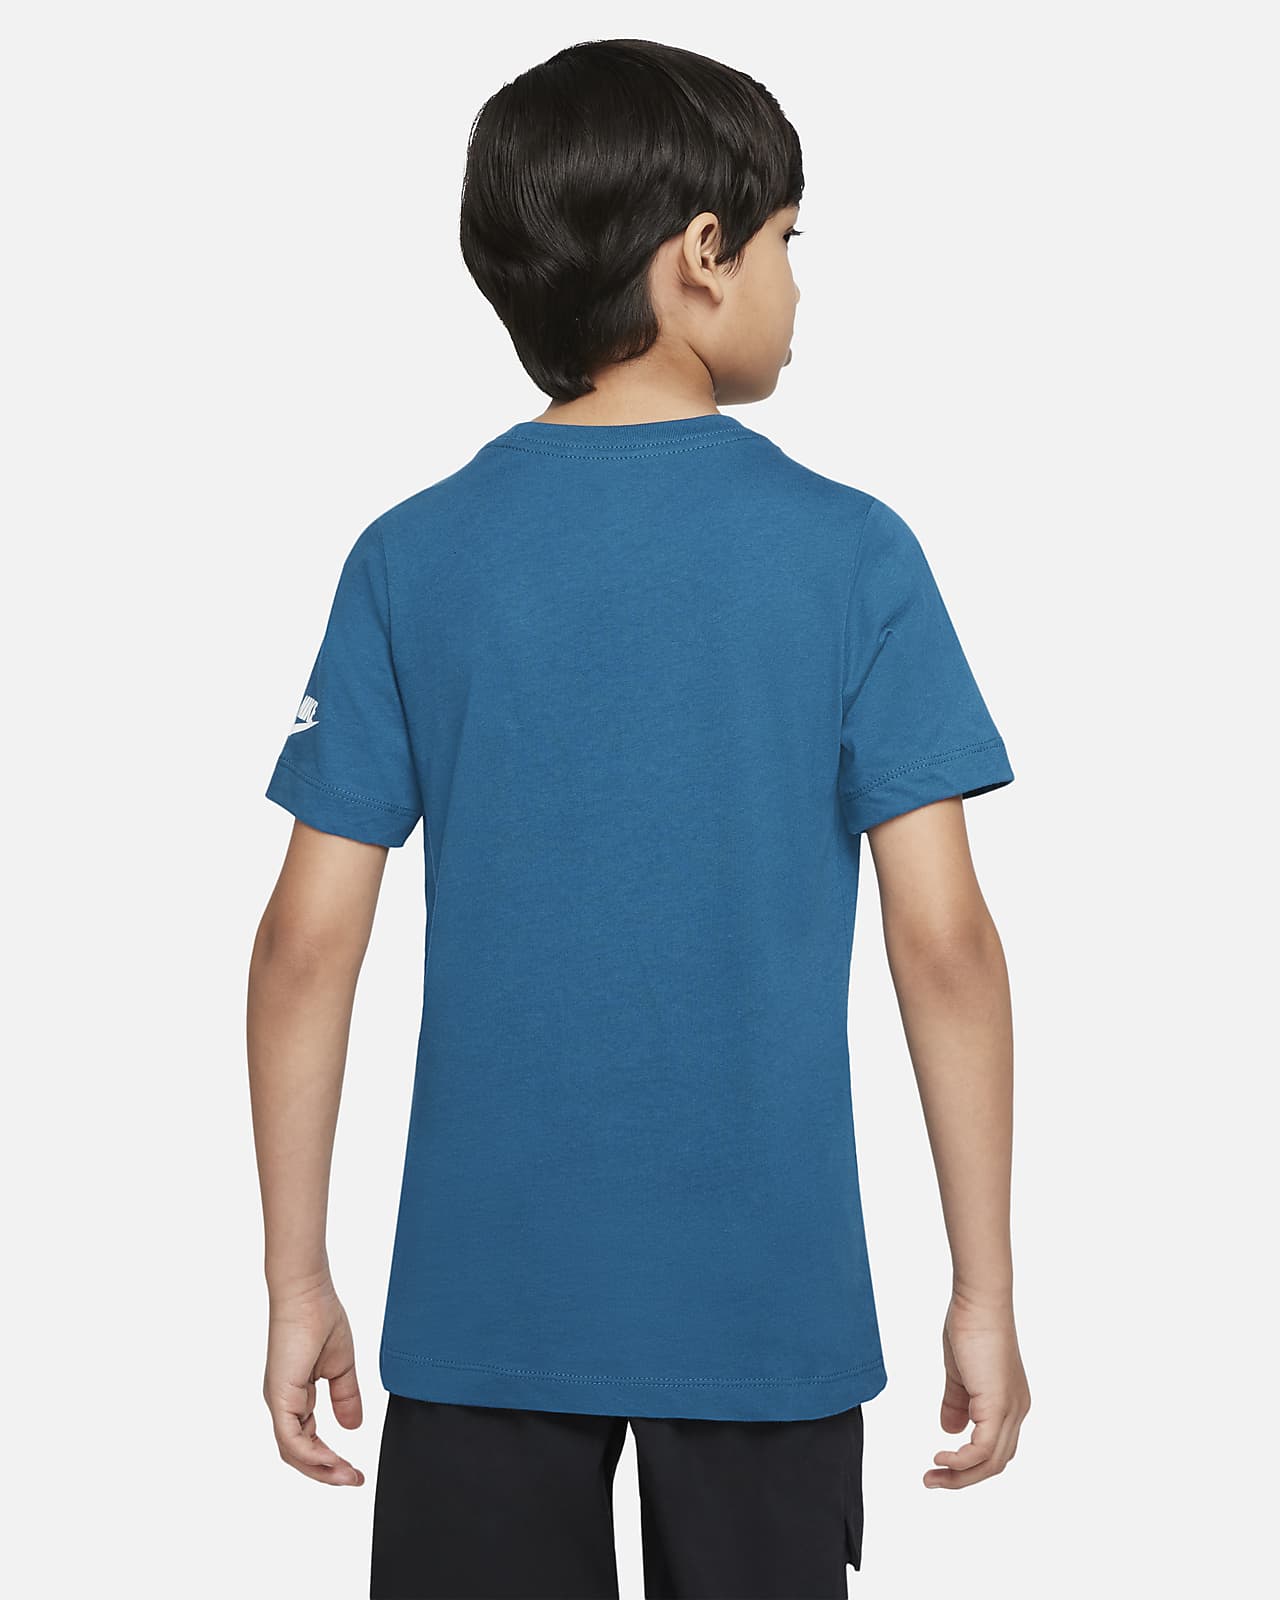 Nike Sportswear Older Kids' T-Shirt. Nike AT